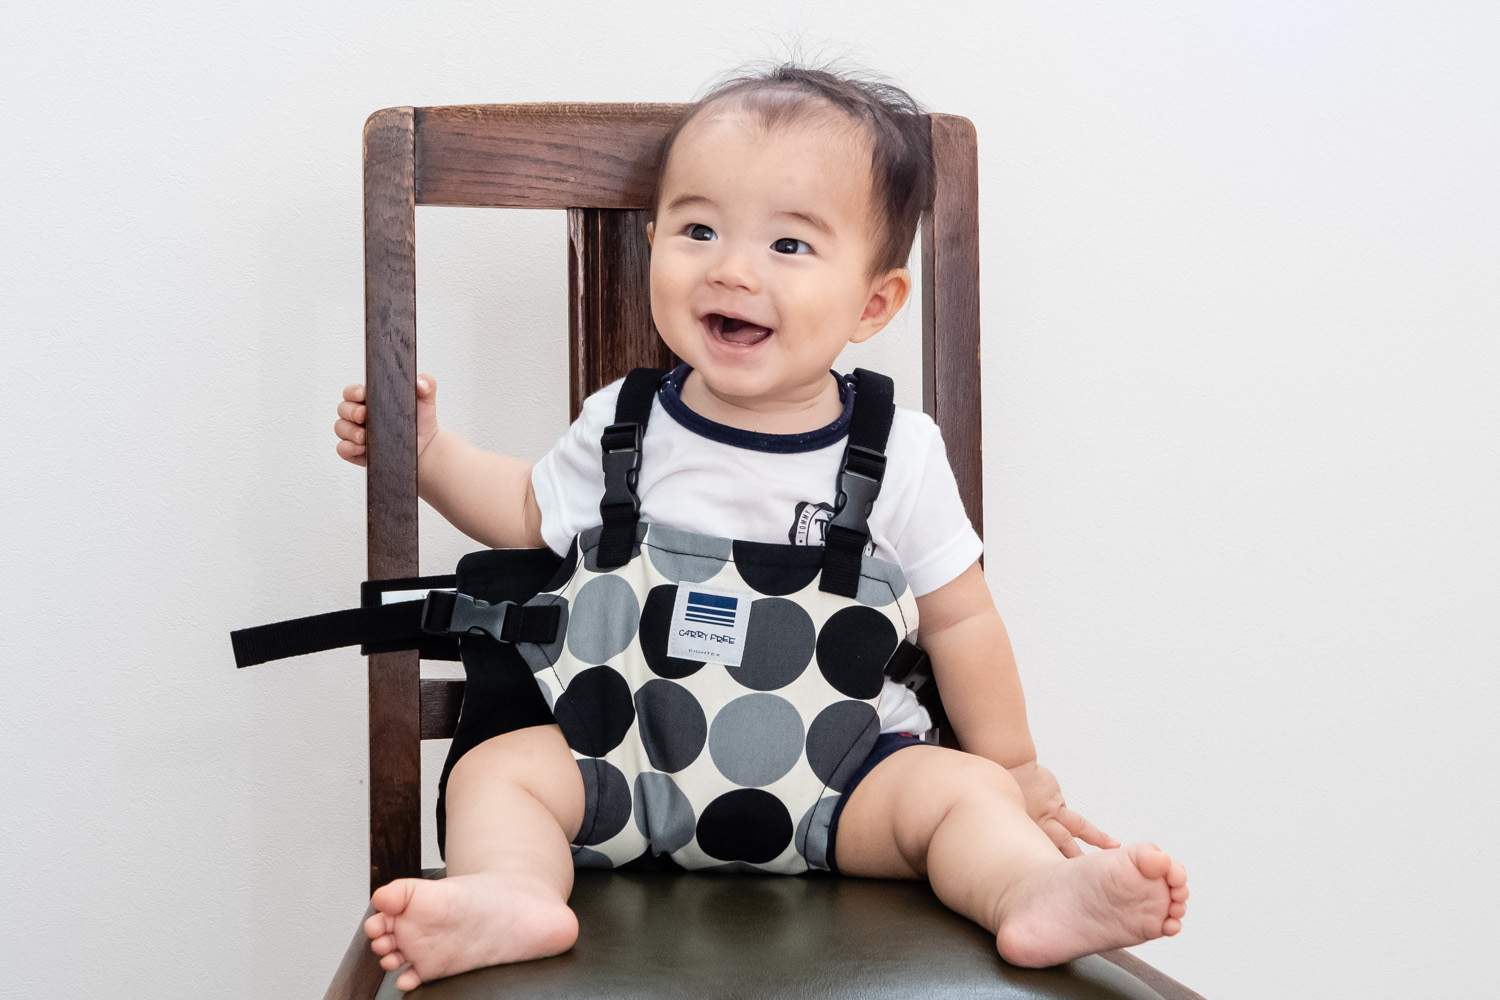 肩ベルト付きで赤ちゃんも安心なチェアベルト キャリフリー チェアベルトホールド で 暮らしやお出かけを快適に Newscast